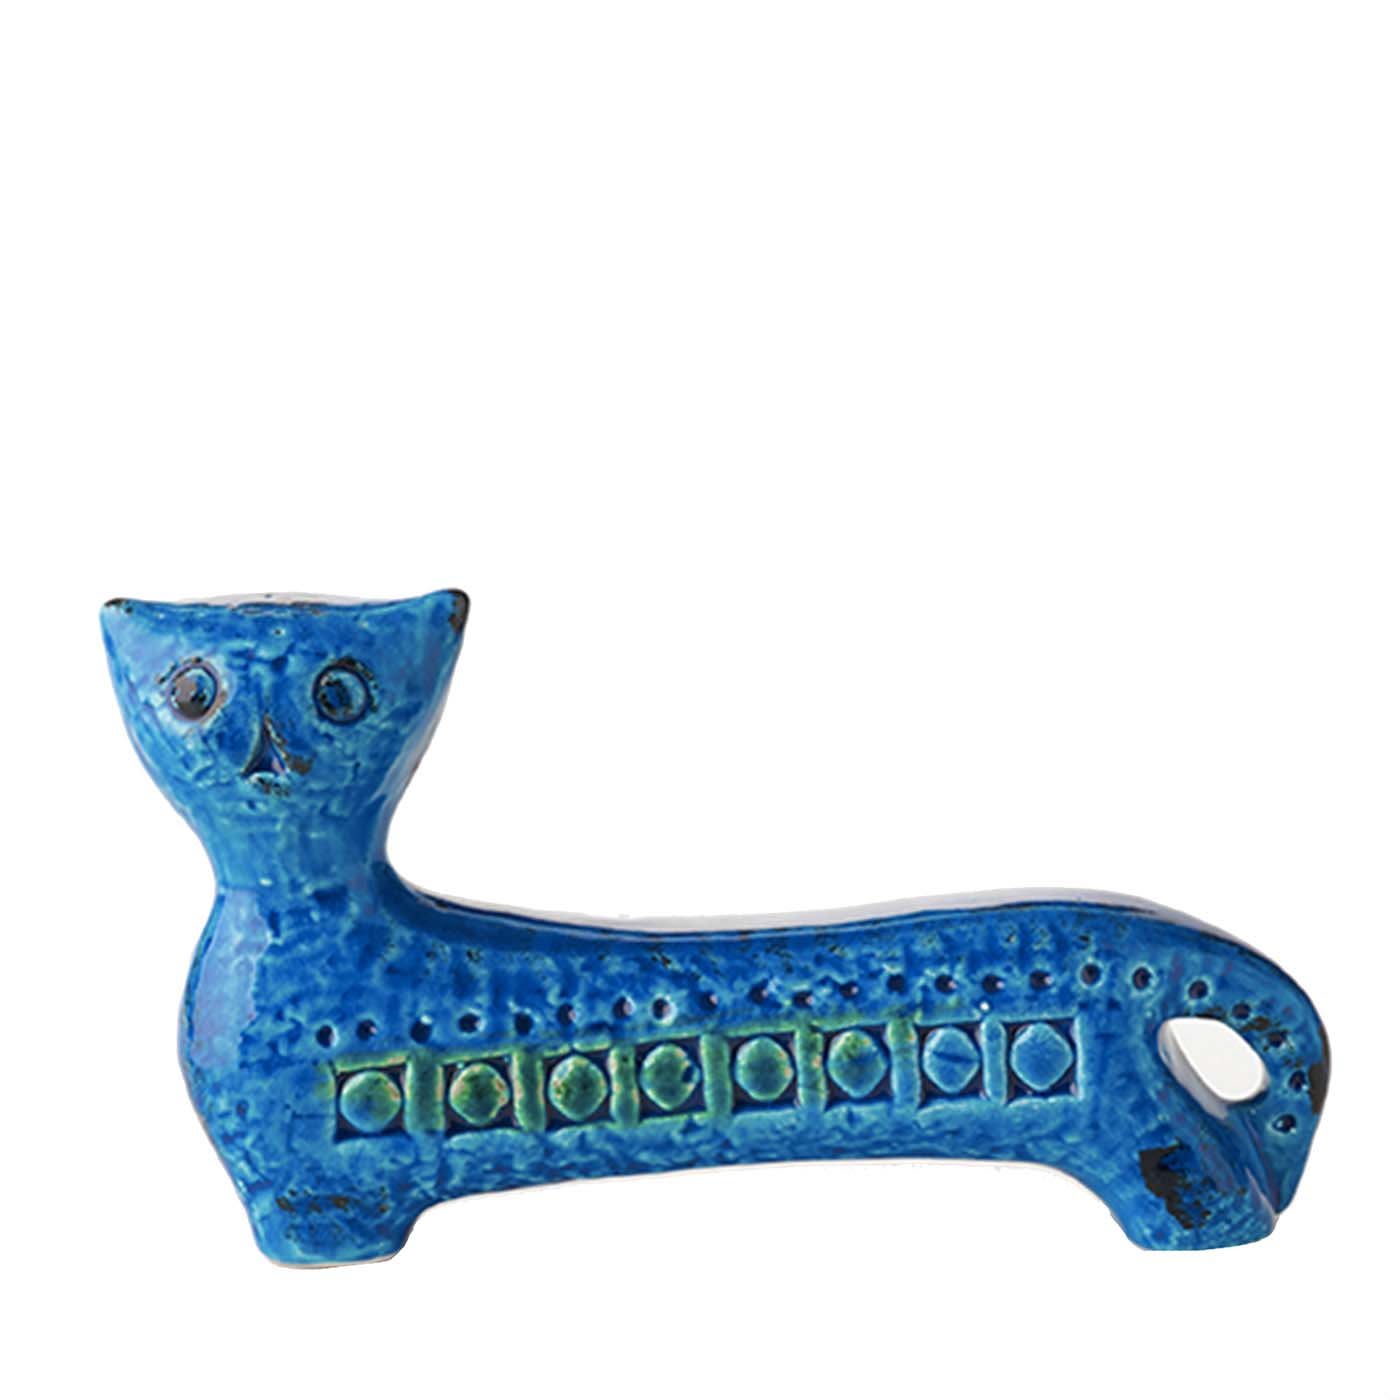 Rimini Blu Long Cat Figurine by Aldo Londi - Bitossi Ceramiche